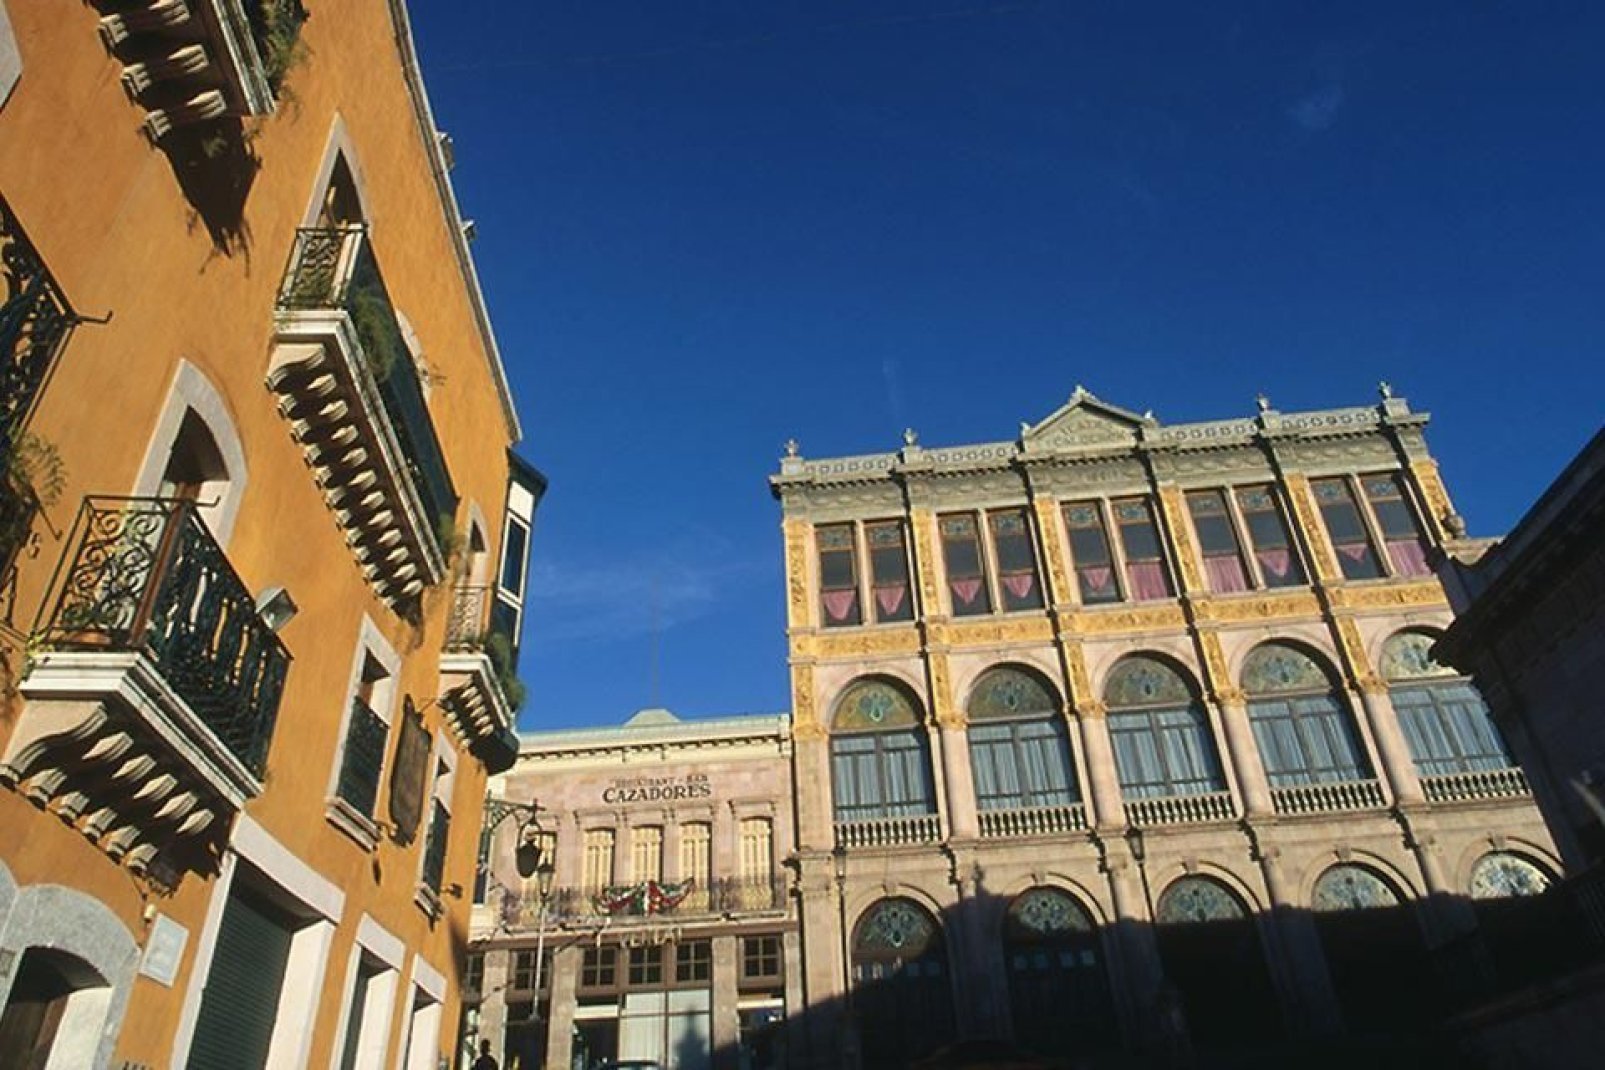 Le centre historique de Zacatecas est caractérisé par les décorations de style colonial et les nombreux balcons en fer présents sur les immeubles.